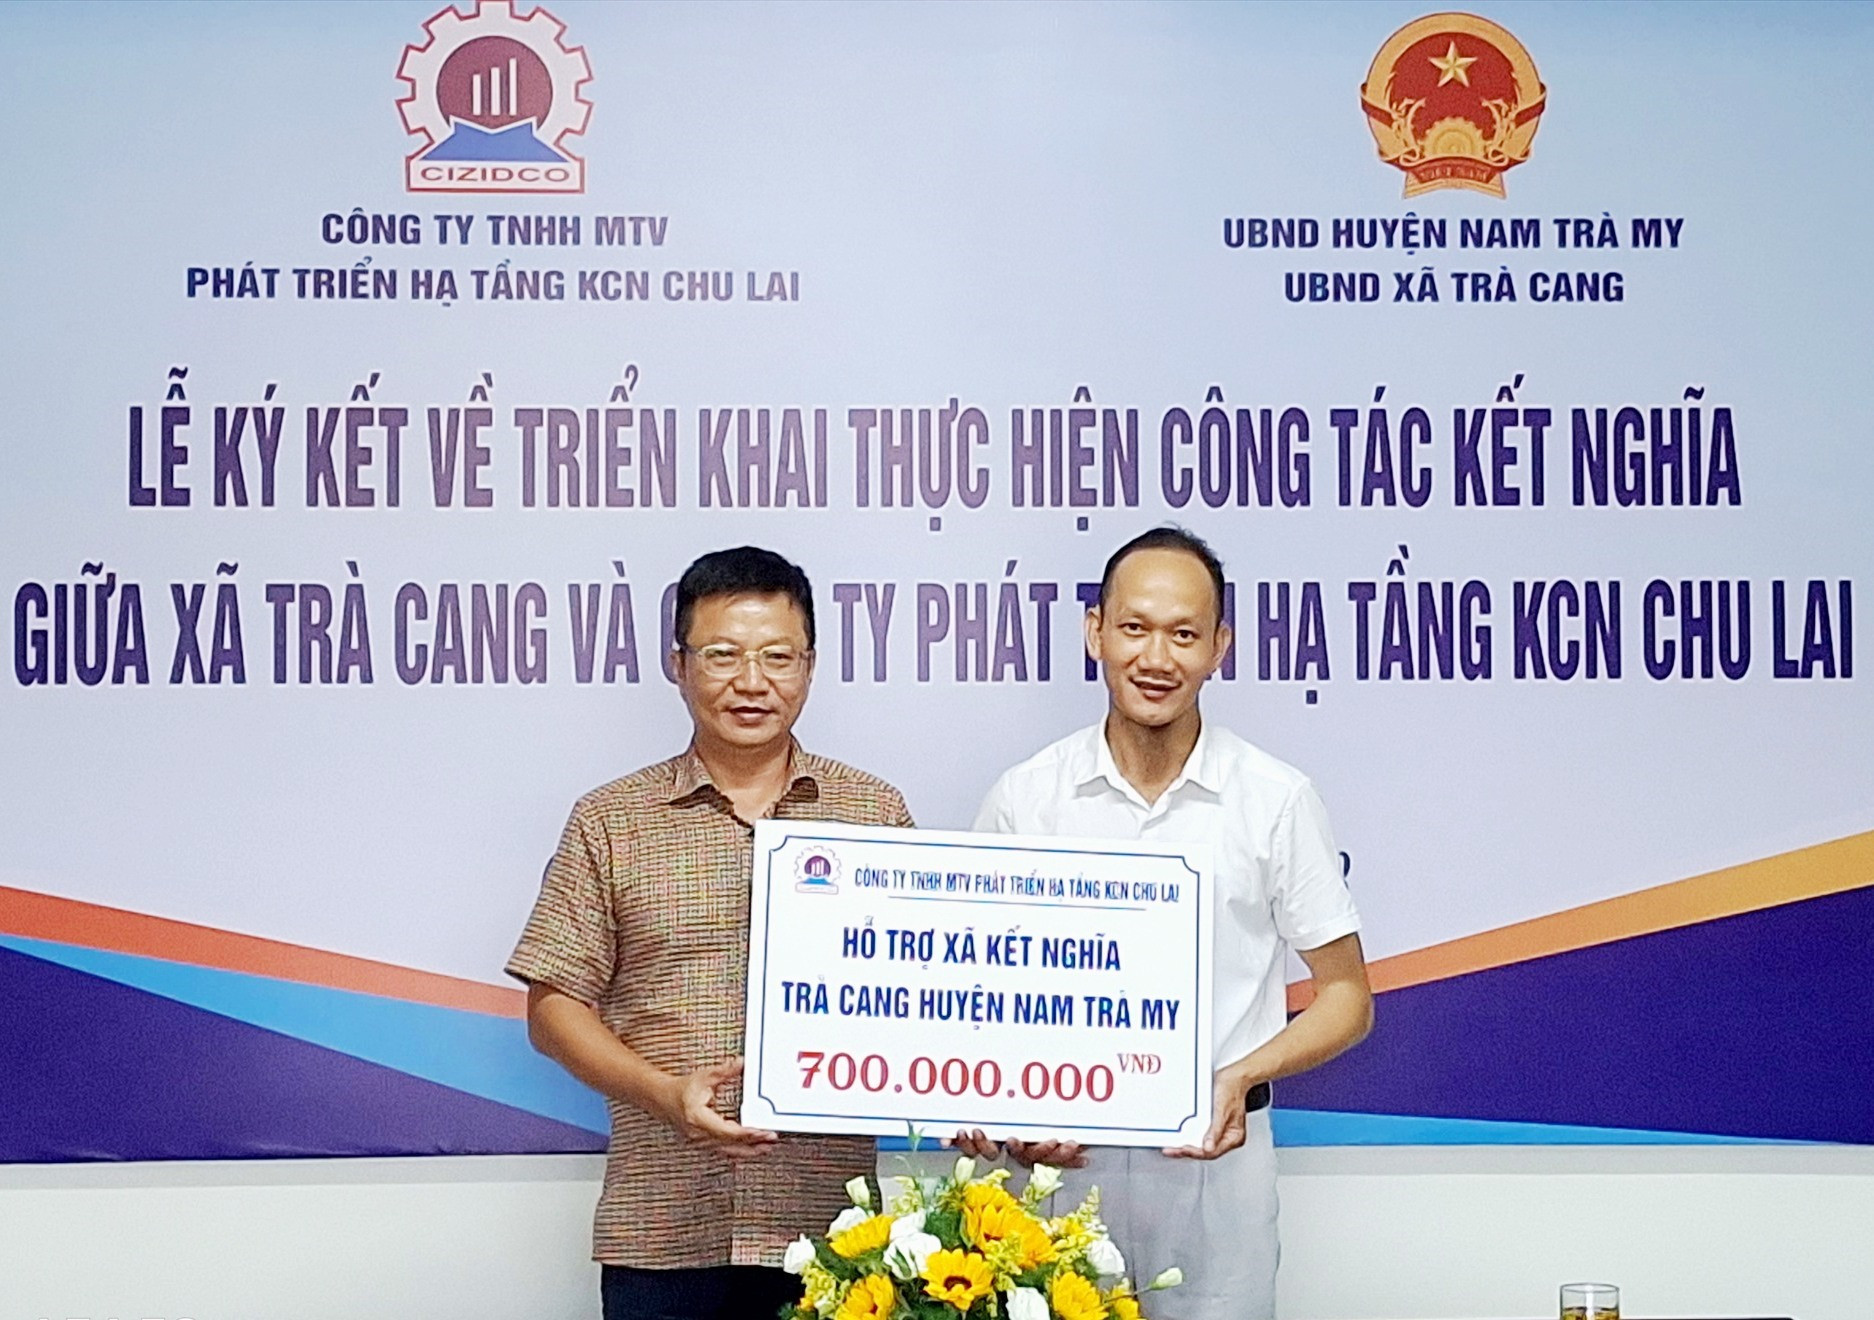 Ông Lê Ngọc Thủy -Giám đốc CIZIDCO (bên trái) trao tượng trưng kinh phí 700 triệu đồng cho Chủ tịch UBND xã Trà Cang Ngô Tấn Lạc. Ảnh NTB